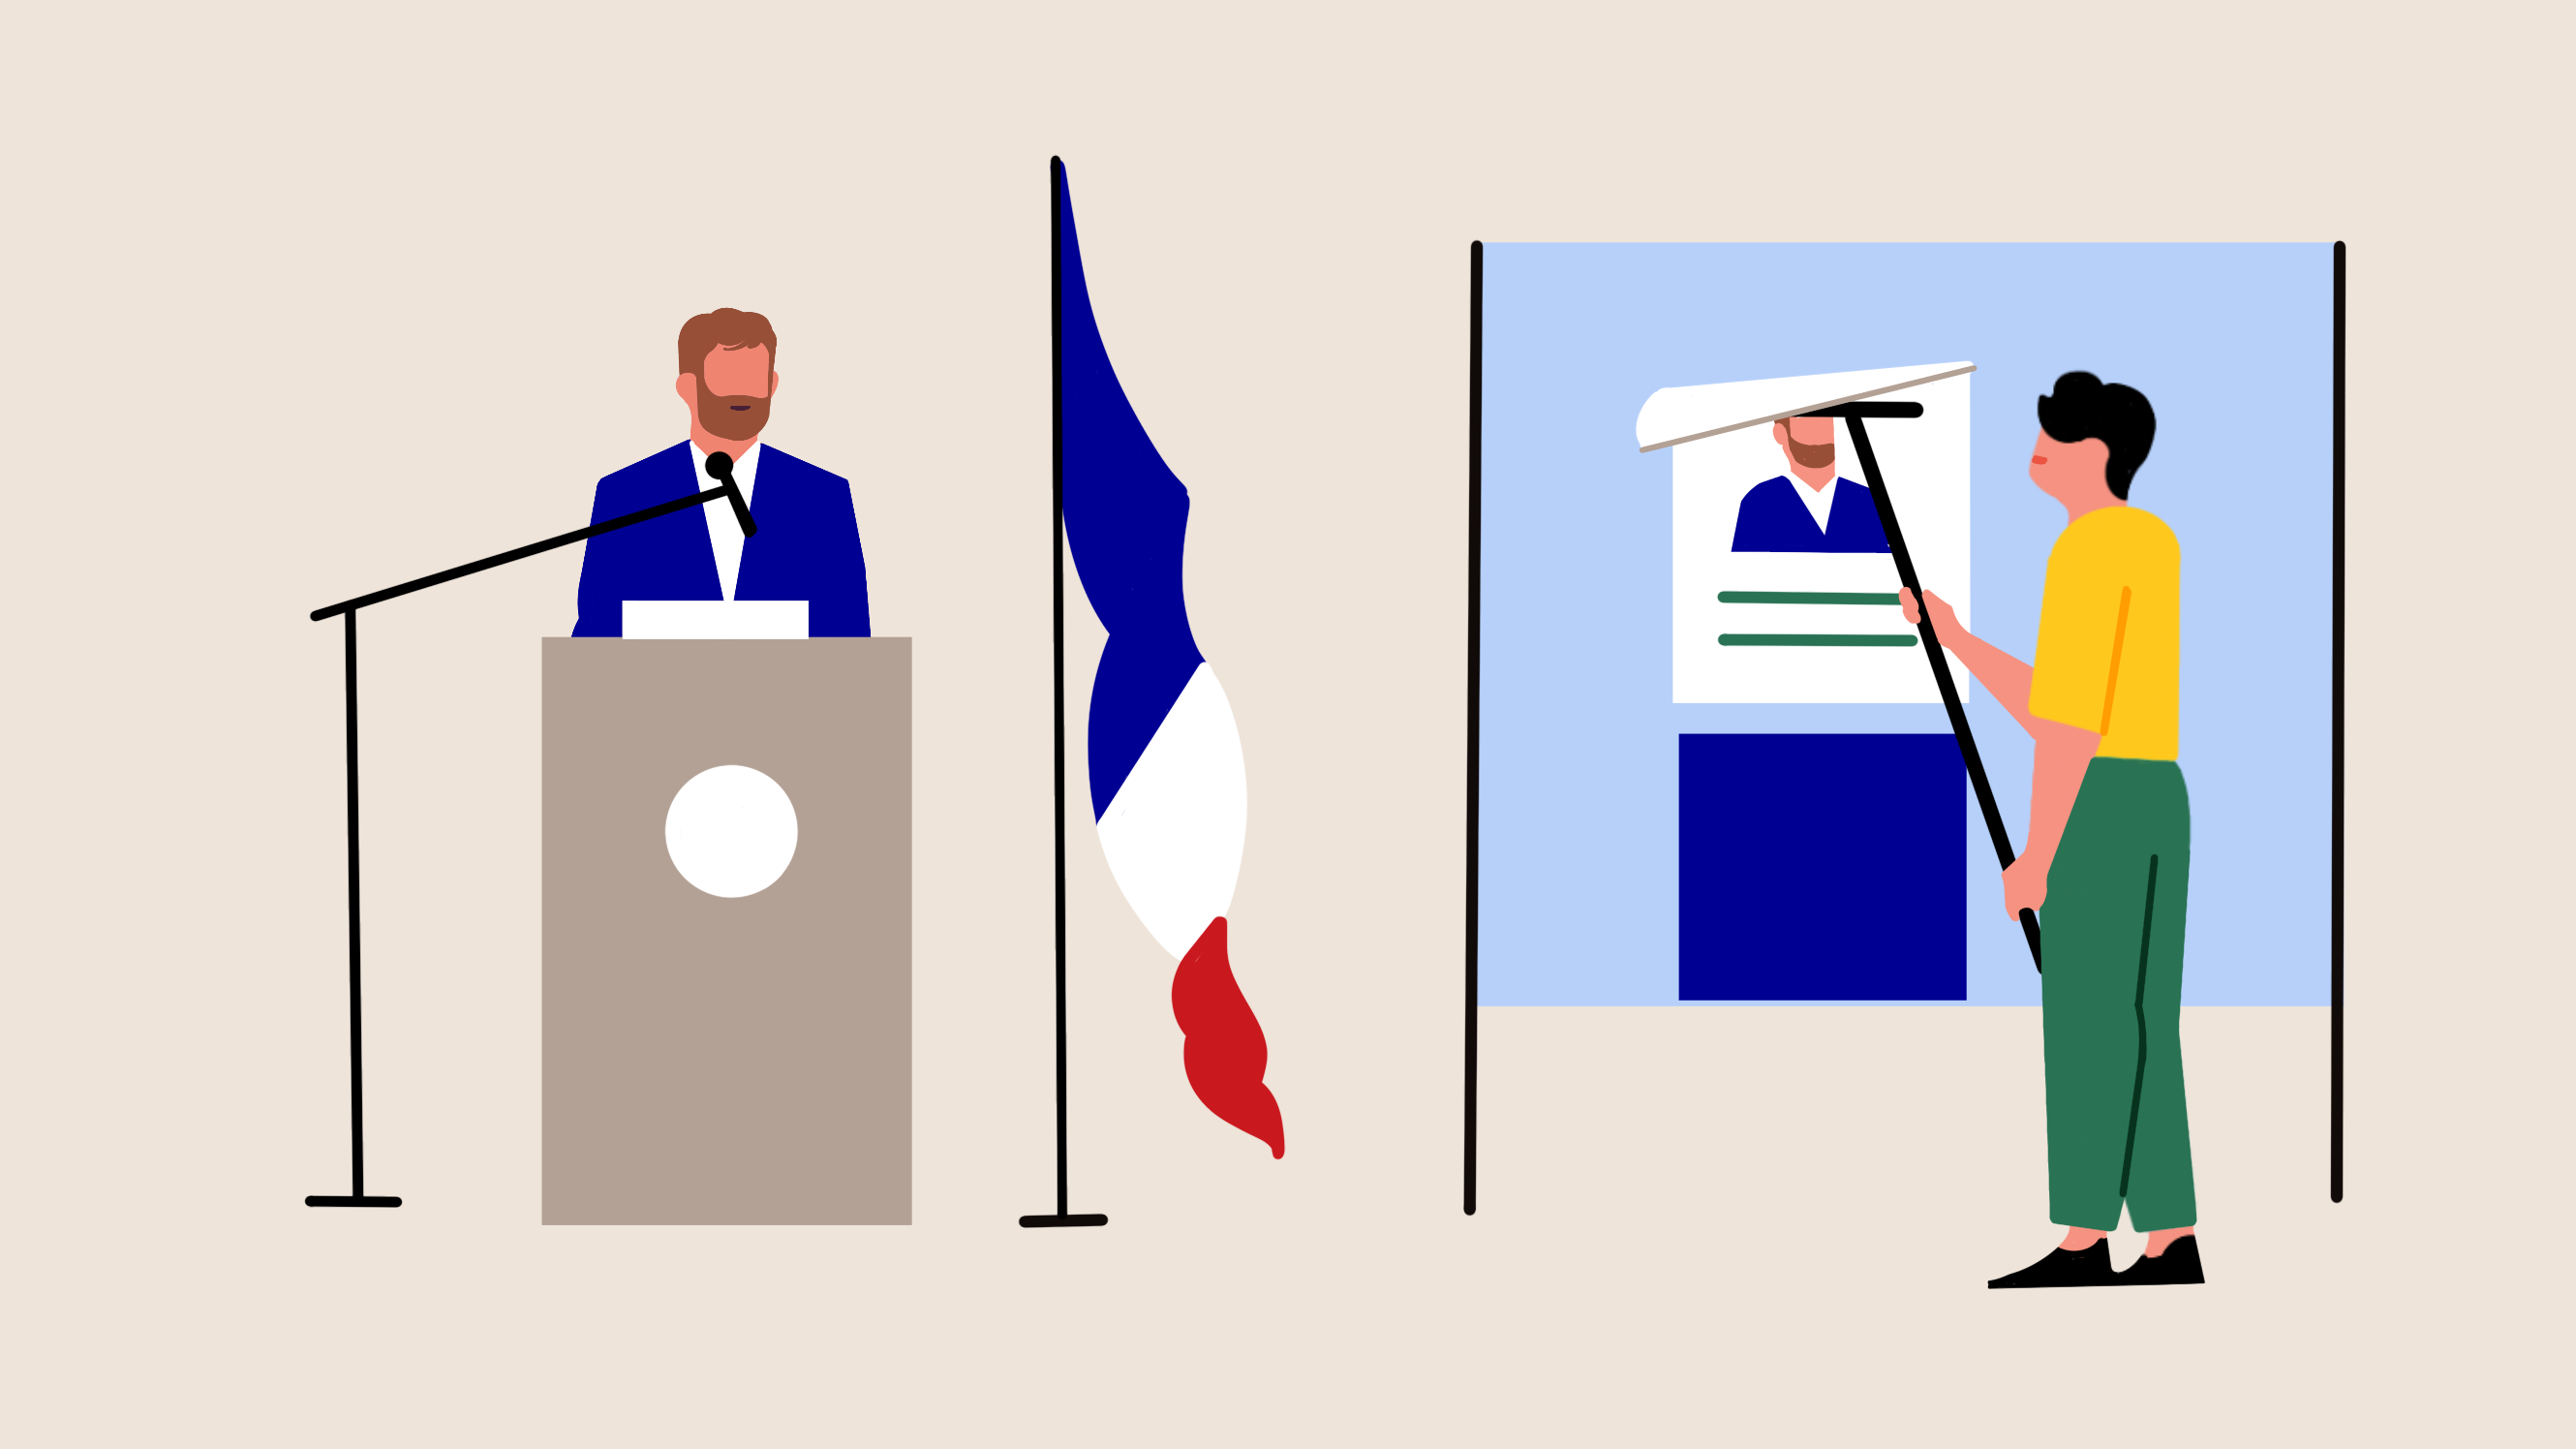 Infographie représentant des citoyens, un élu candidat derrière un pupitre et un homme en train de coller une affiche électorale.